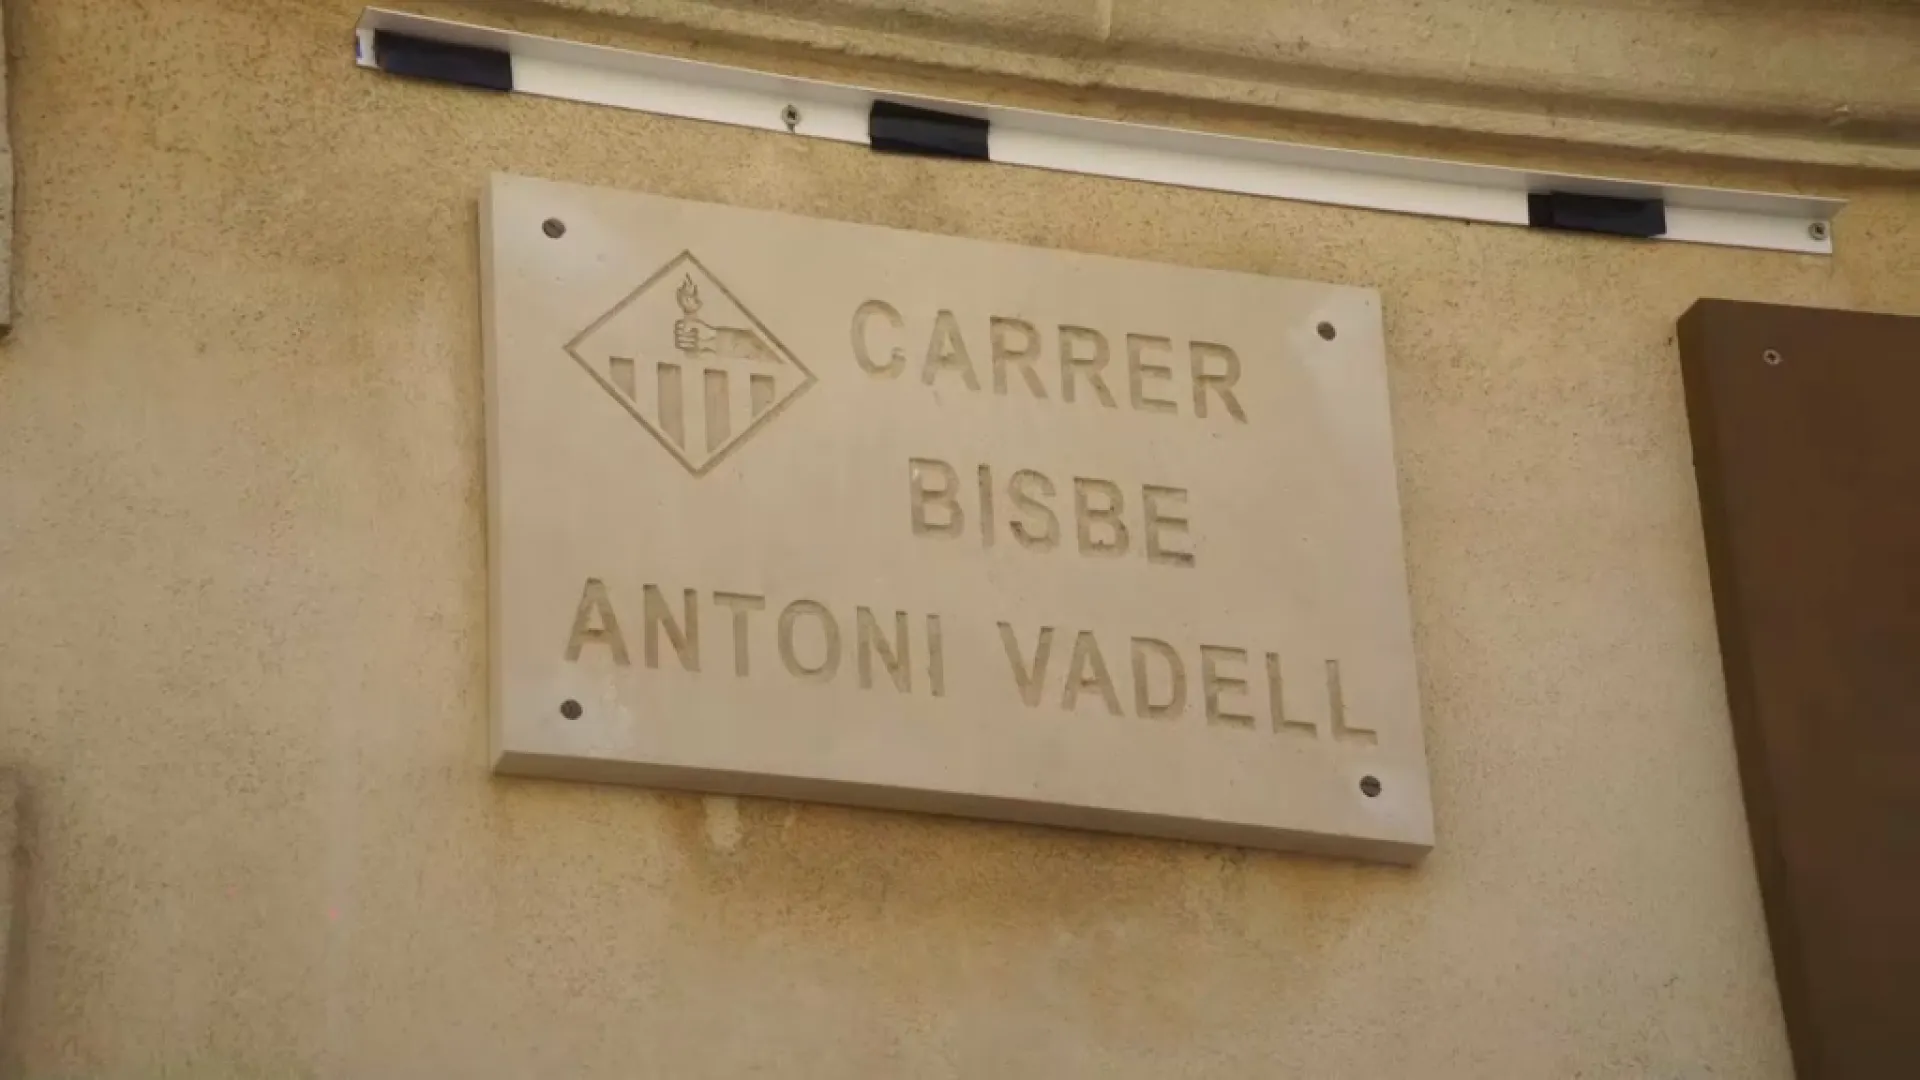 Mossèn Antoni Vadell ja té un carrer amb el seu nom a Llucmajor